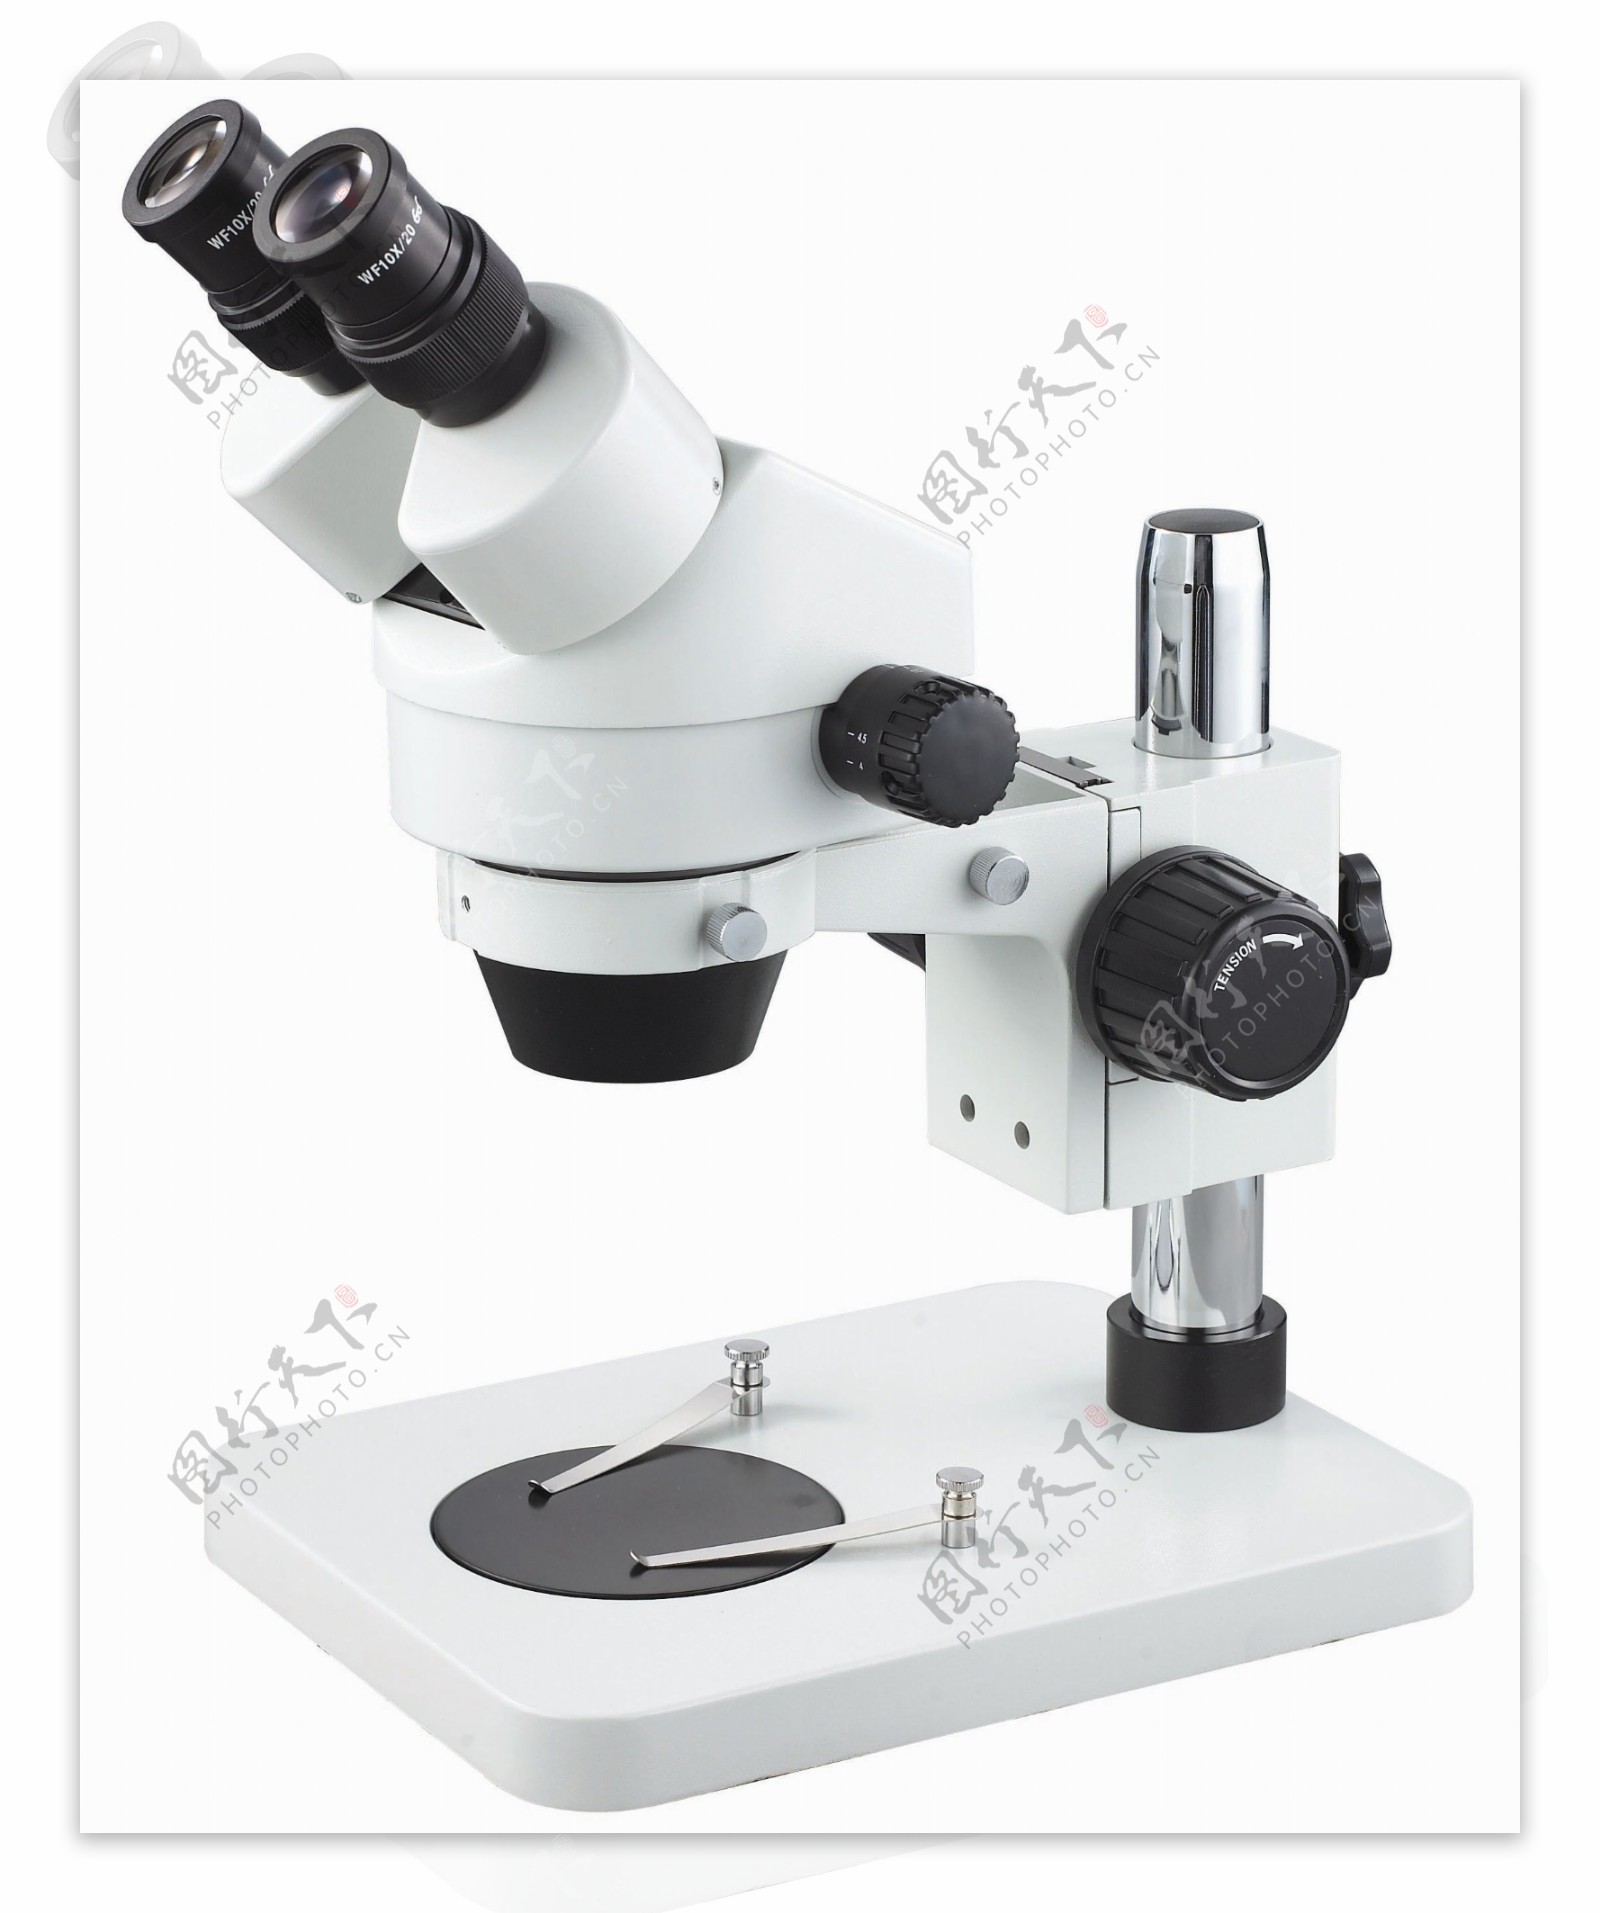 显微镜图片